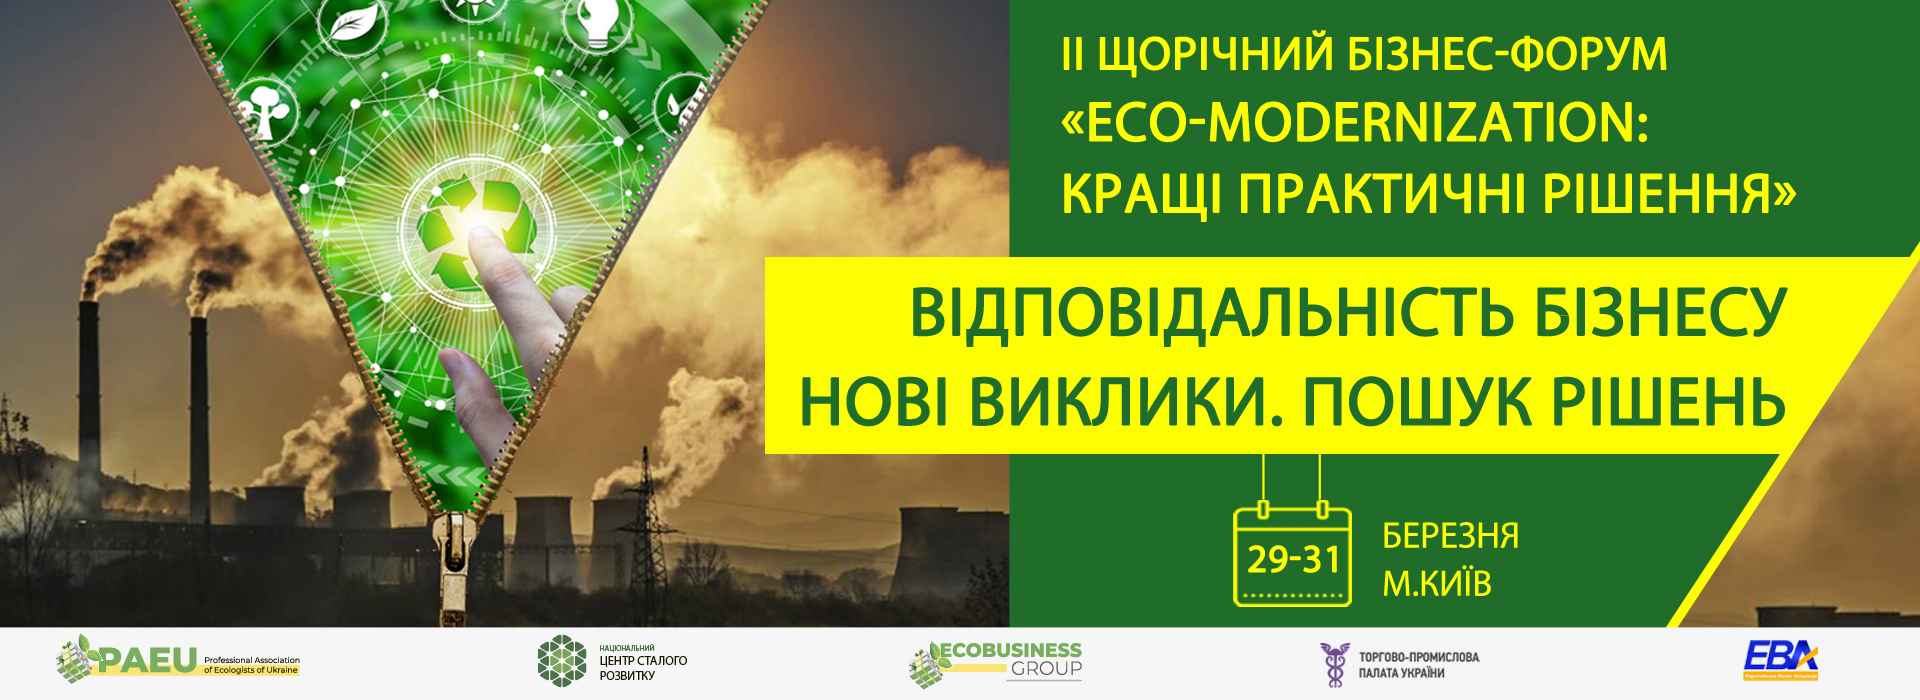 ІІ Щорічний бізнес-форум з промислової екології «Екомодернізація-2021: кращі практичні рішення»